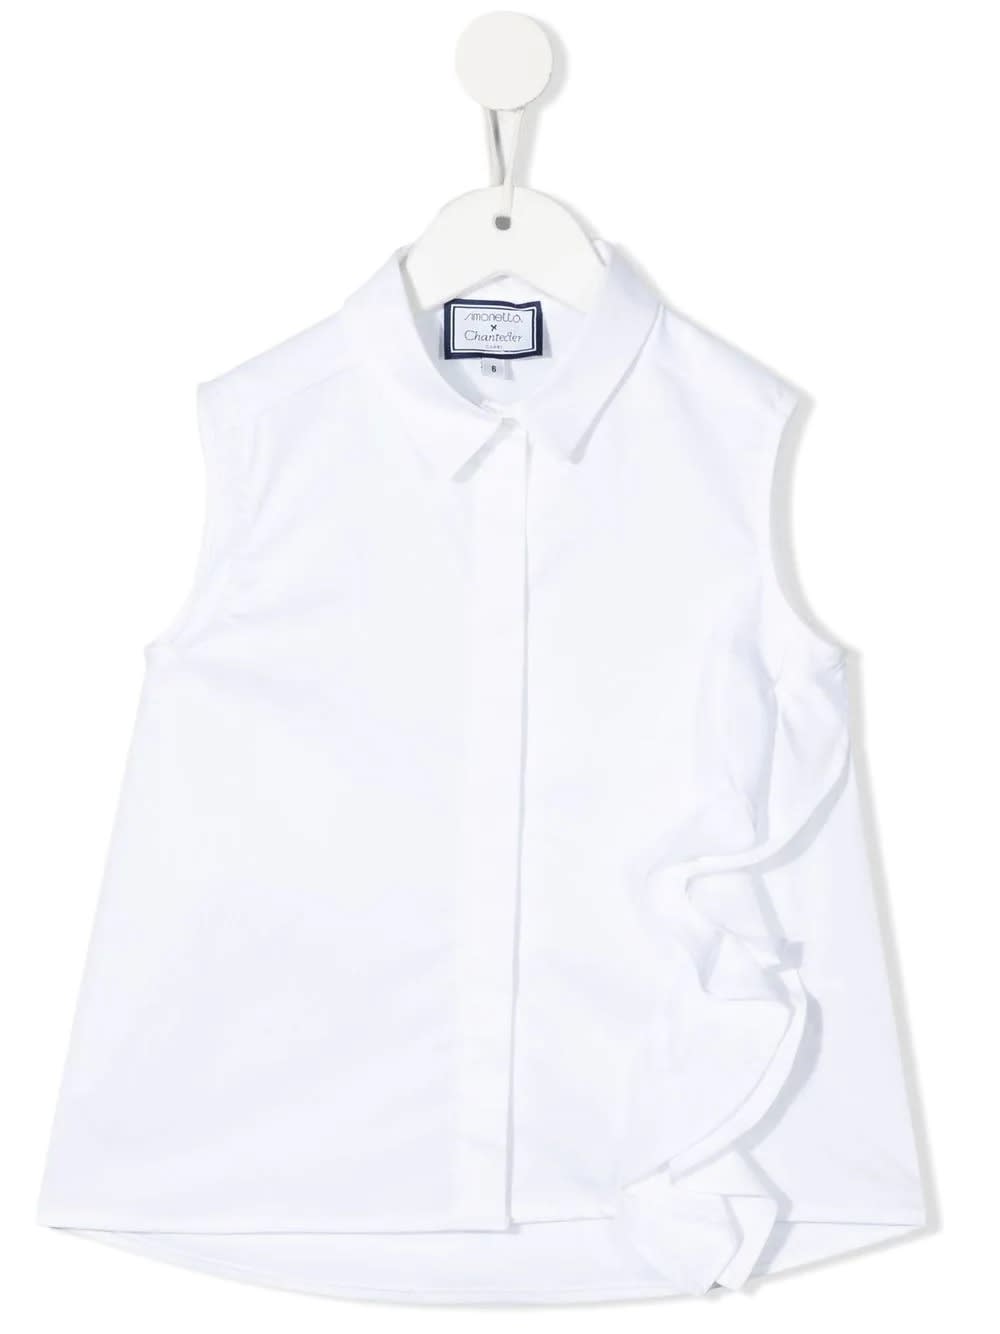 Simonetta Kids White Sleeveless Shirt With Rouches